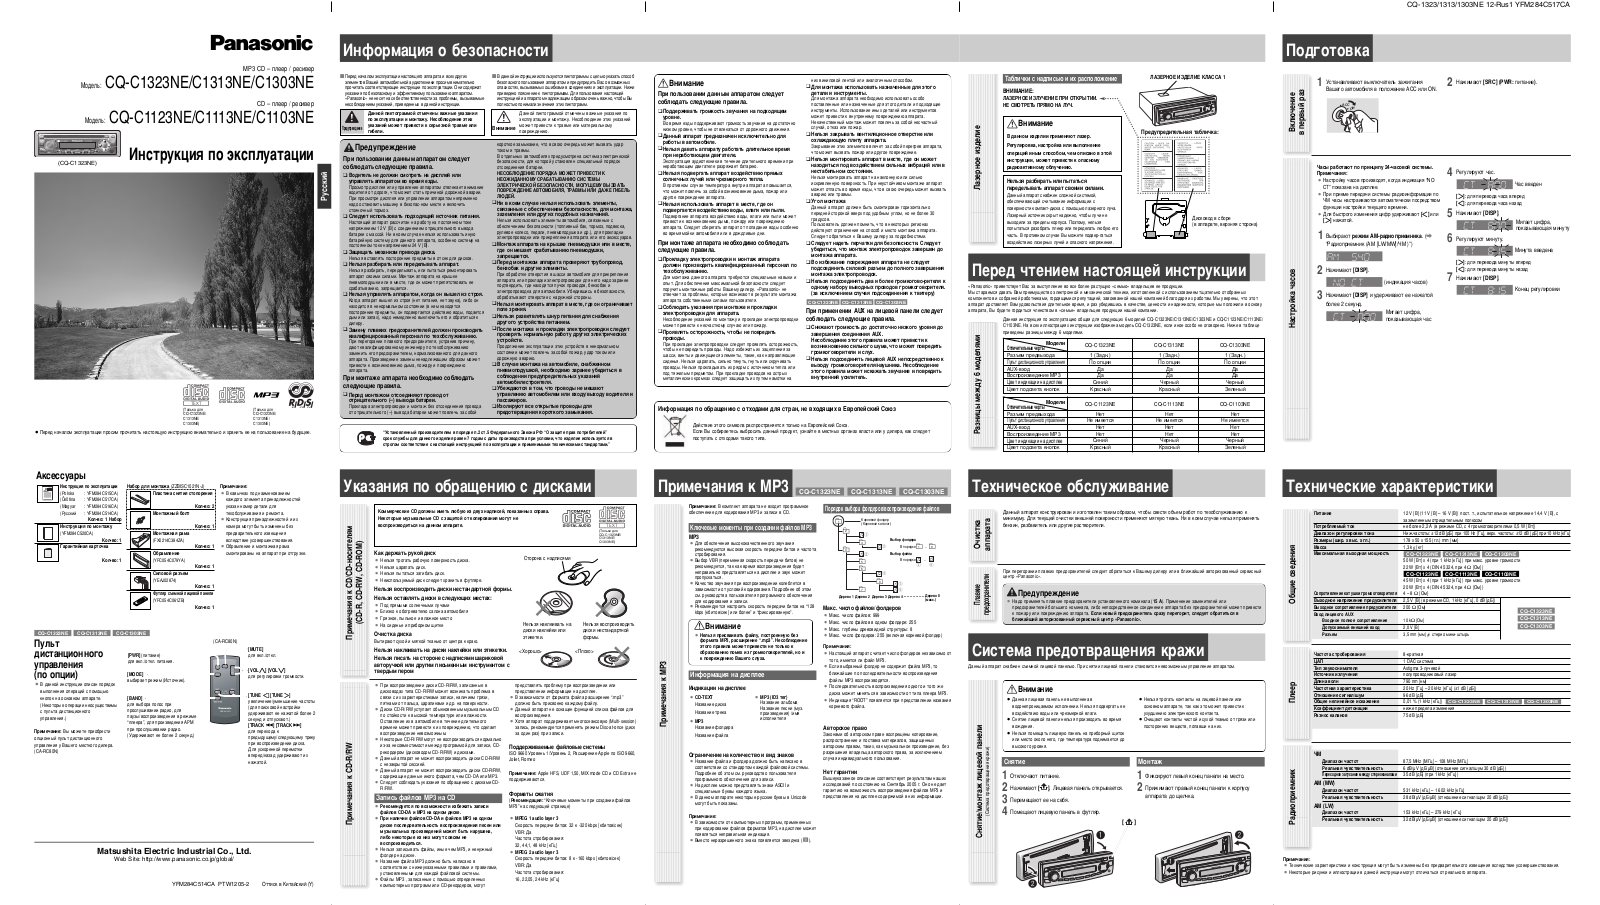 Panasonic CQ-C1323NE, CQ-C1313NE, CQ-C1303NE, CQ-C1123NE, CQ-C1113NE User Manual